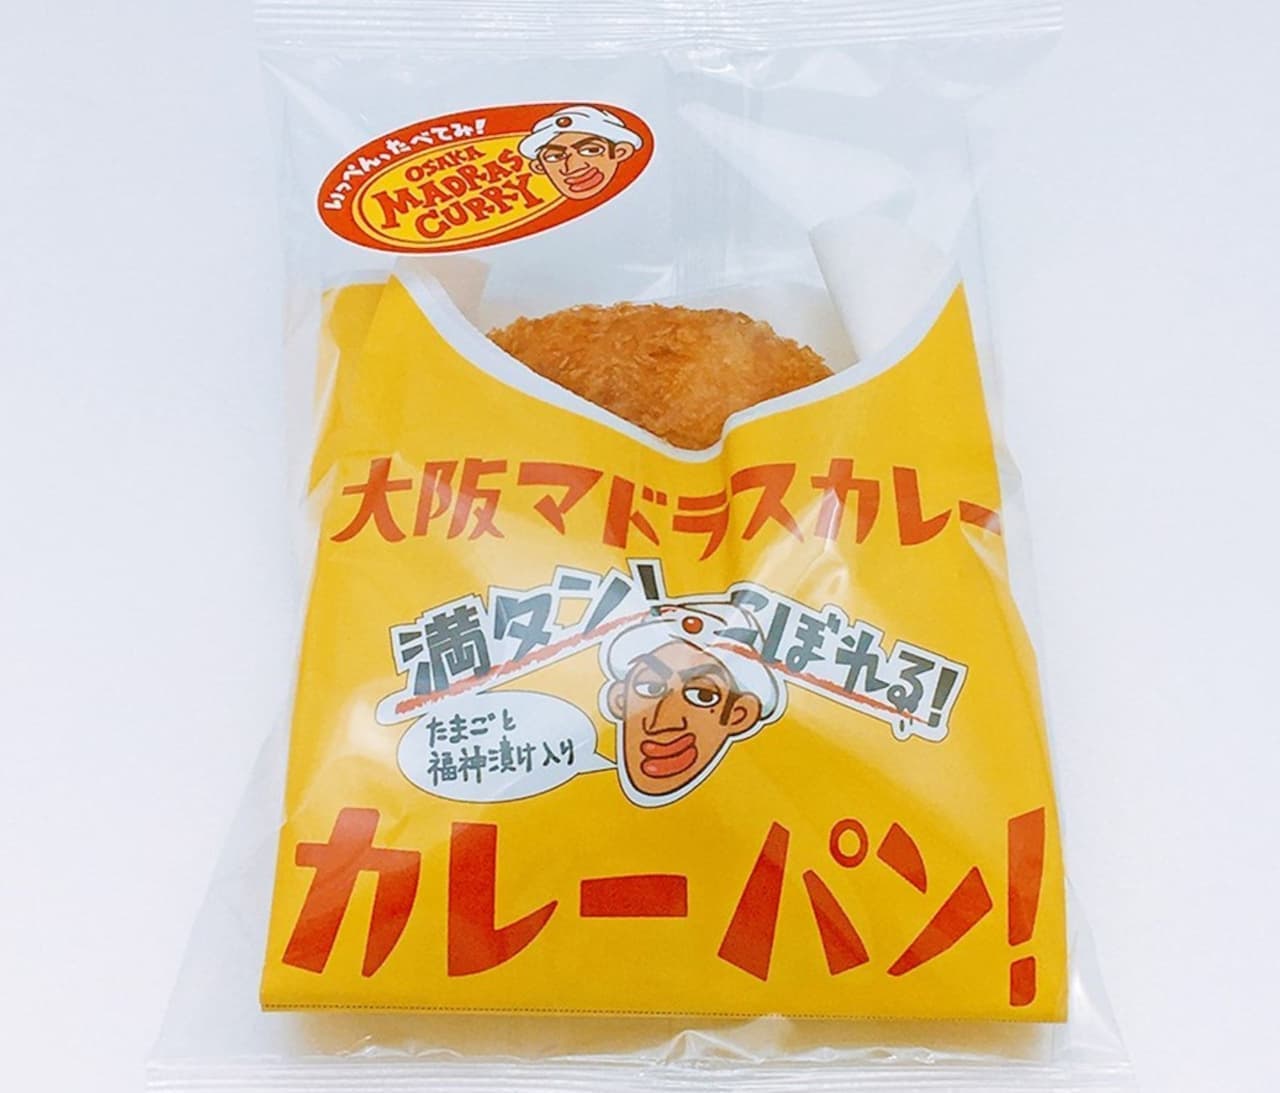 Kimuraya Sohonten "Osaka Madra Curry Bread"